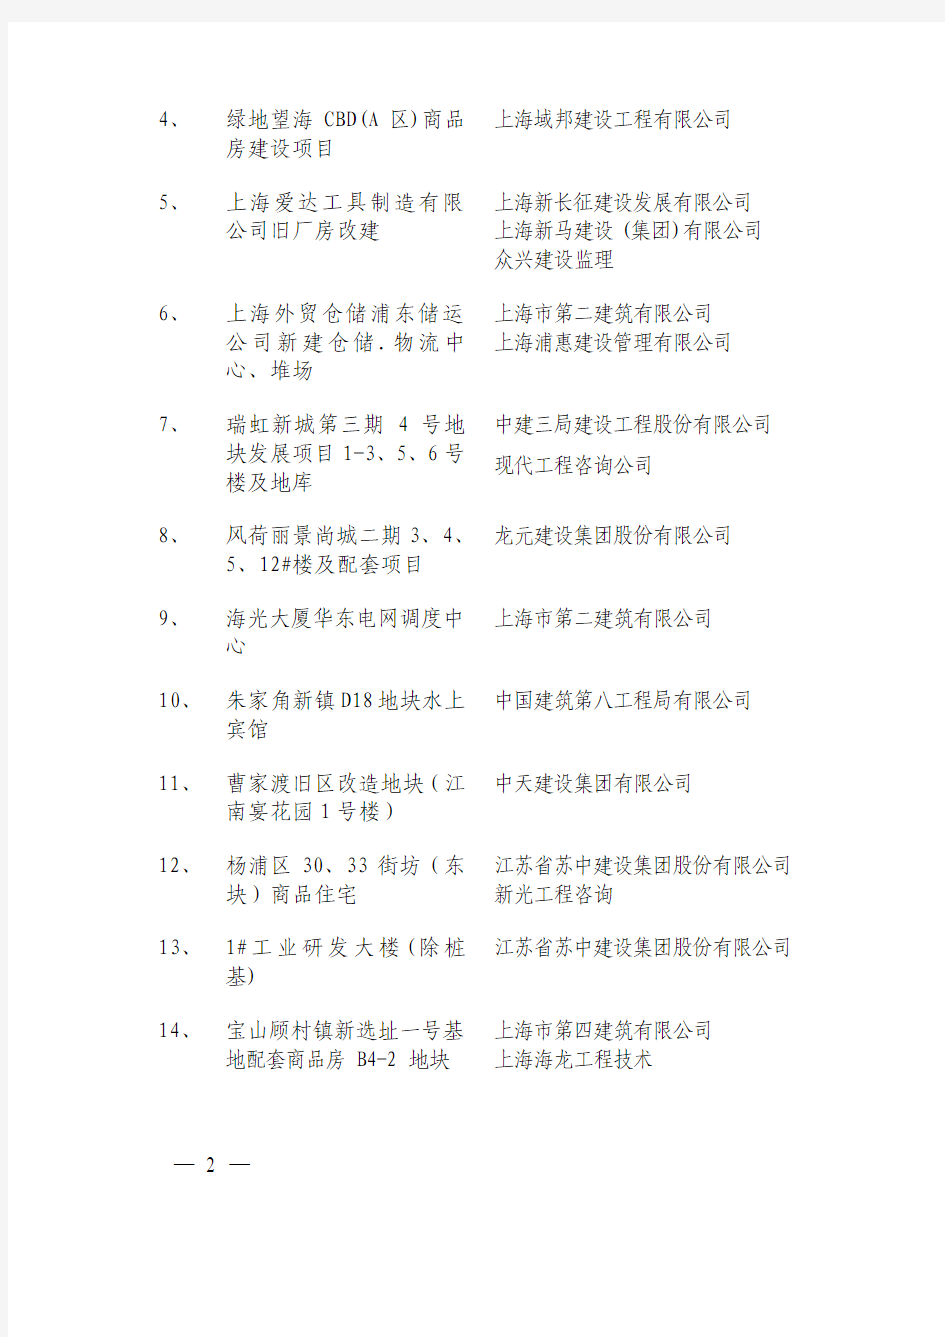 上海市城乡建设和交通委员会关于公布